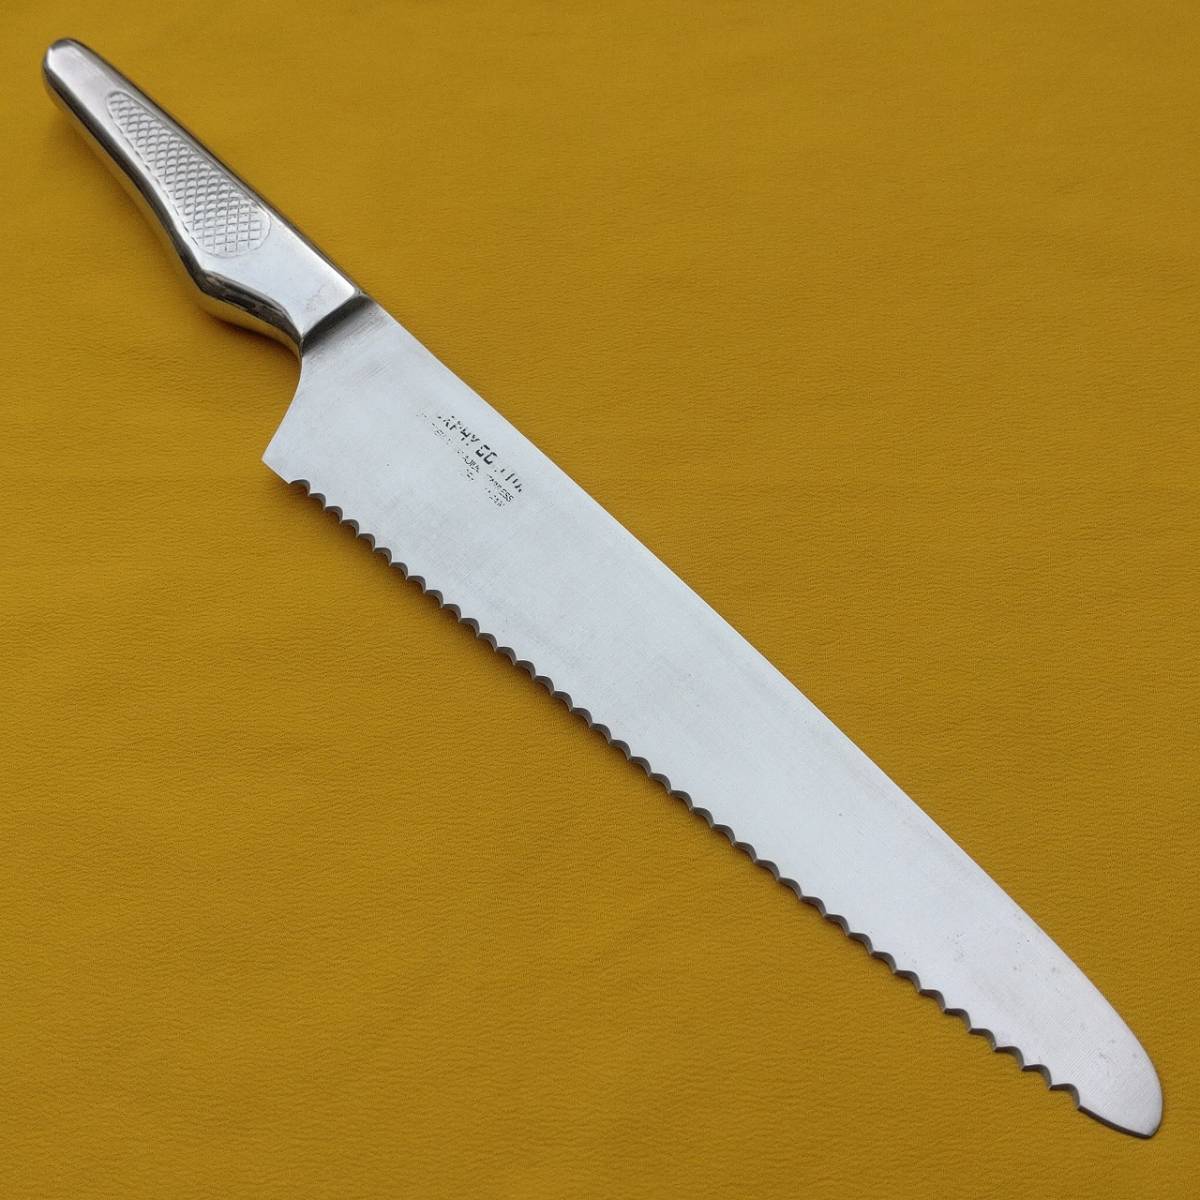 Нож для хлеба Murphy MURPHY Длина лезвия около 210мм МОЛИБДЕН ВАНАДИЙ Молибден Нож для хлеба Нож для хлеба Хлеборезка [1168]